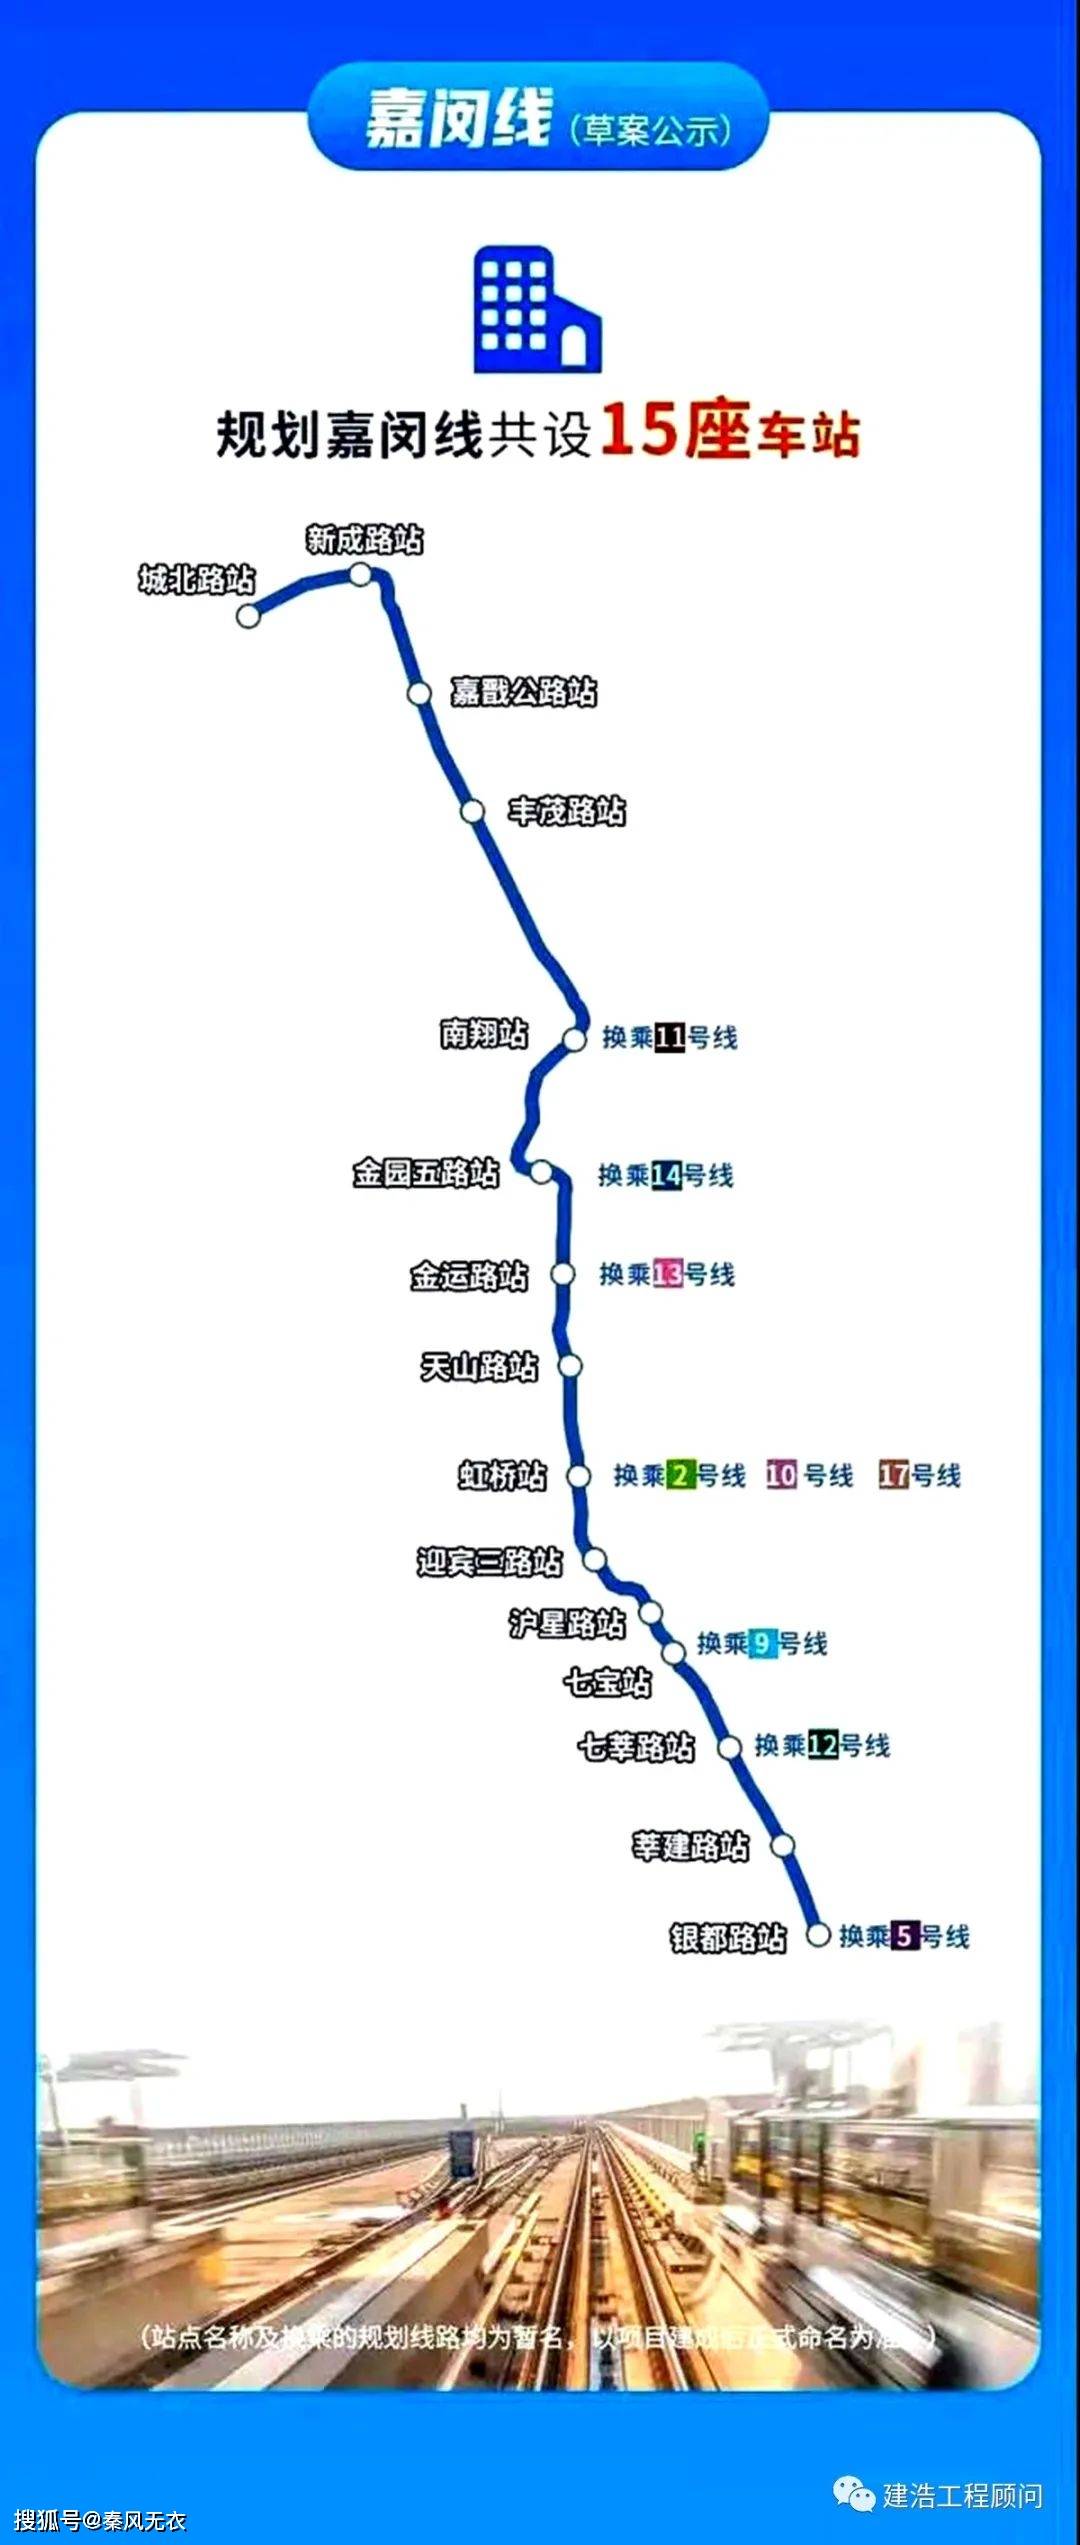 原创重磅,上海市开建市域轨道交通线路,连接嘉定闵行,时速将达160公里